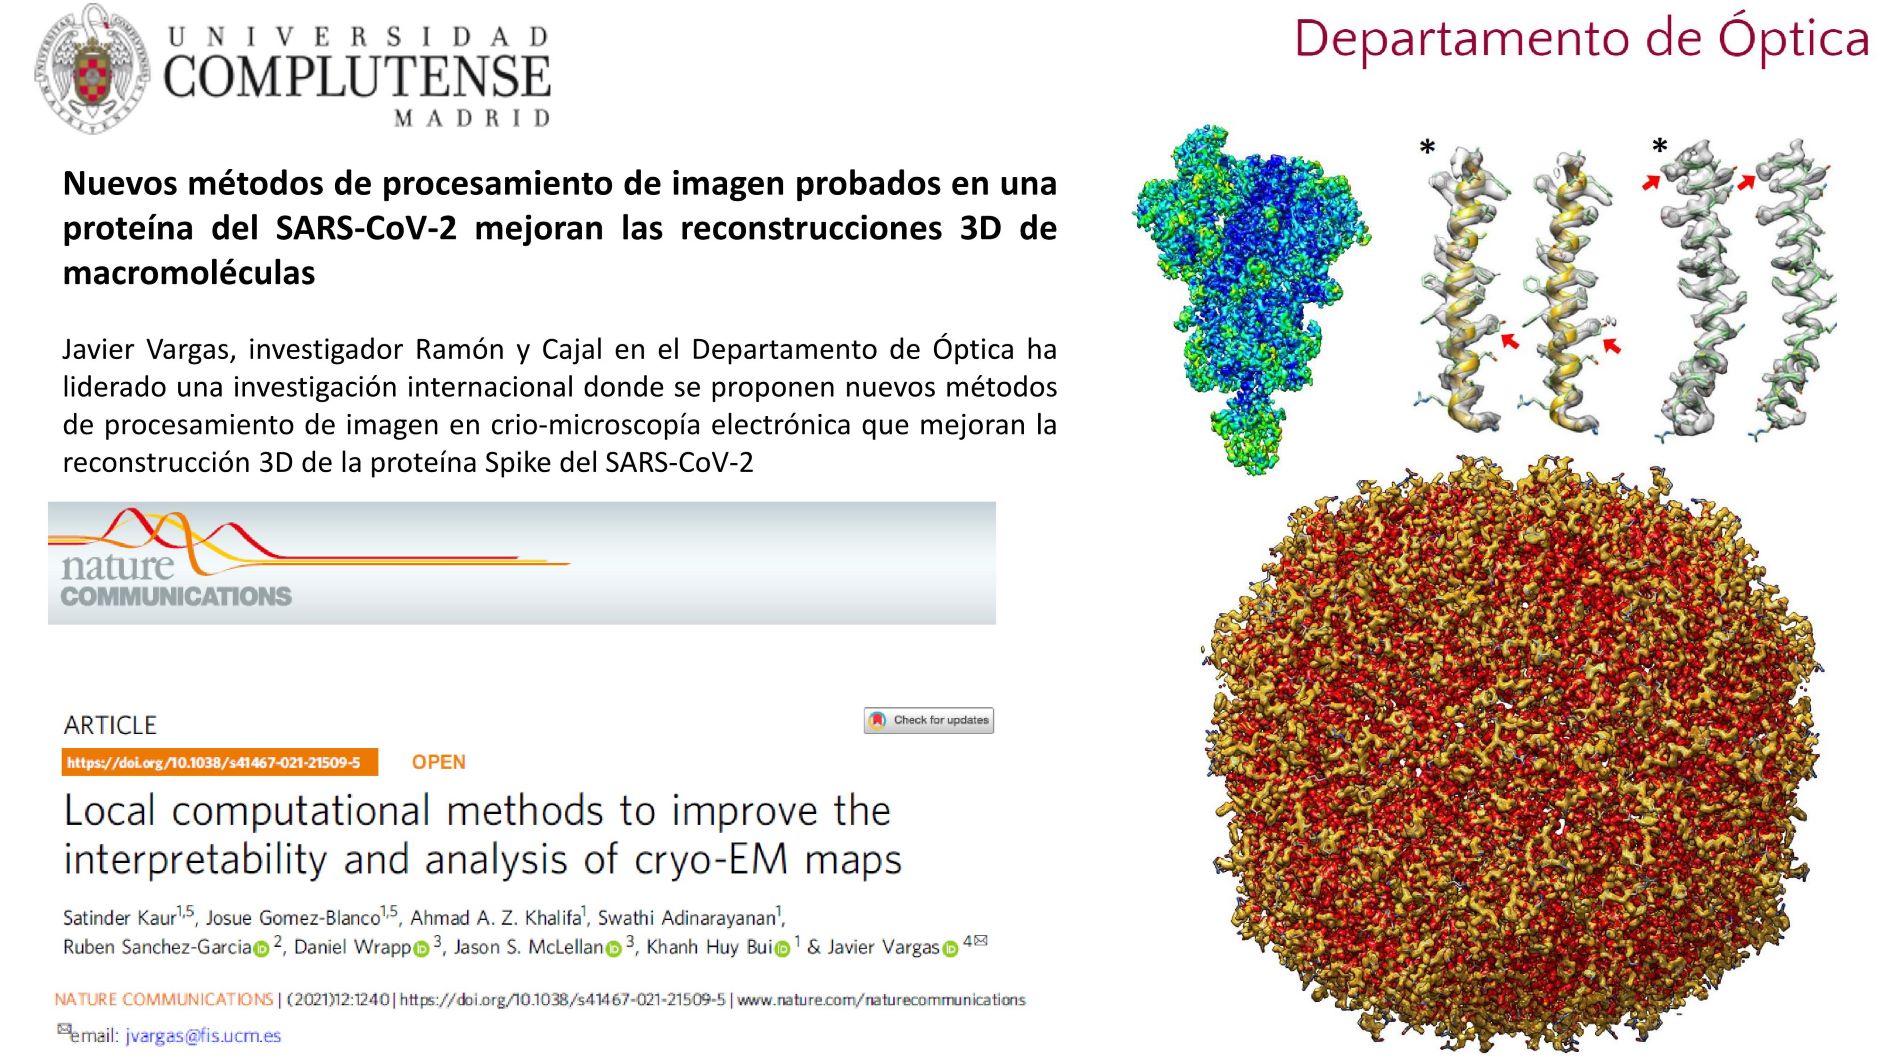 Nuevos métodos de procesamiento de imagen probados en una proteína del SARS-CoV-2 mejoran las reconstrucciones 3 D de macromoléculas